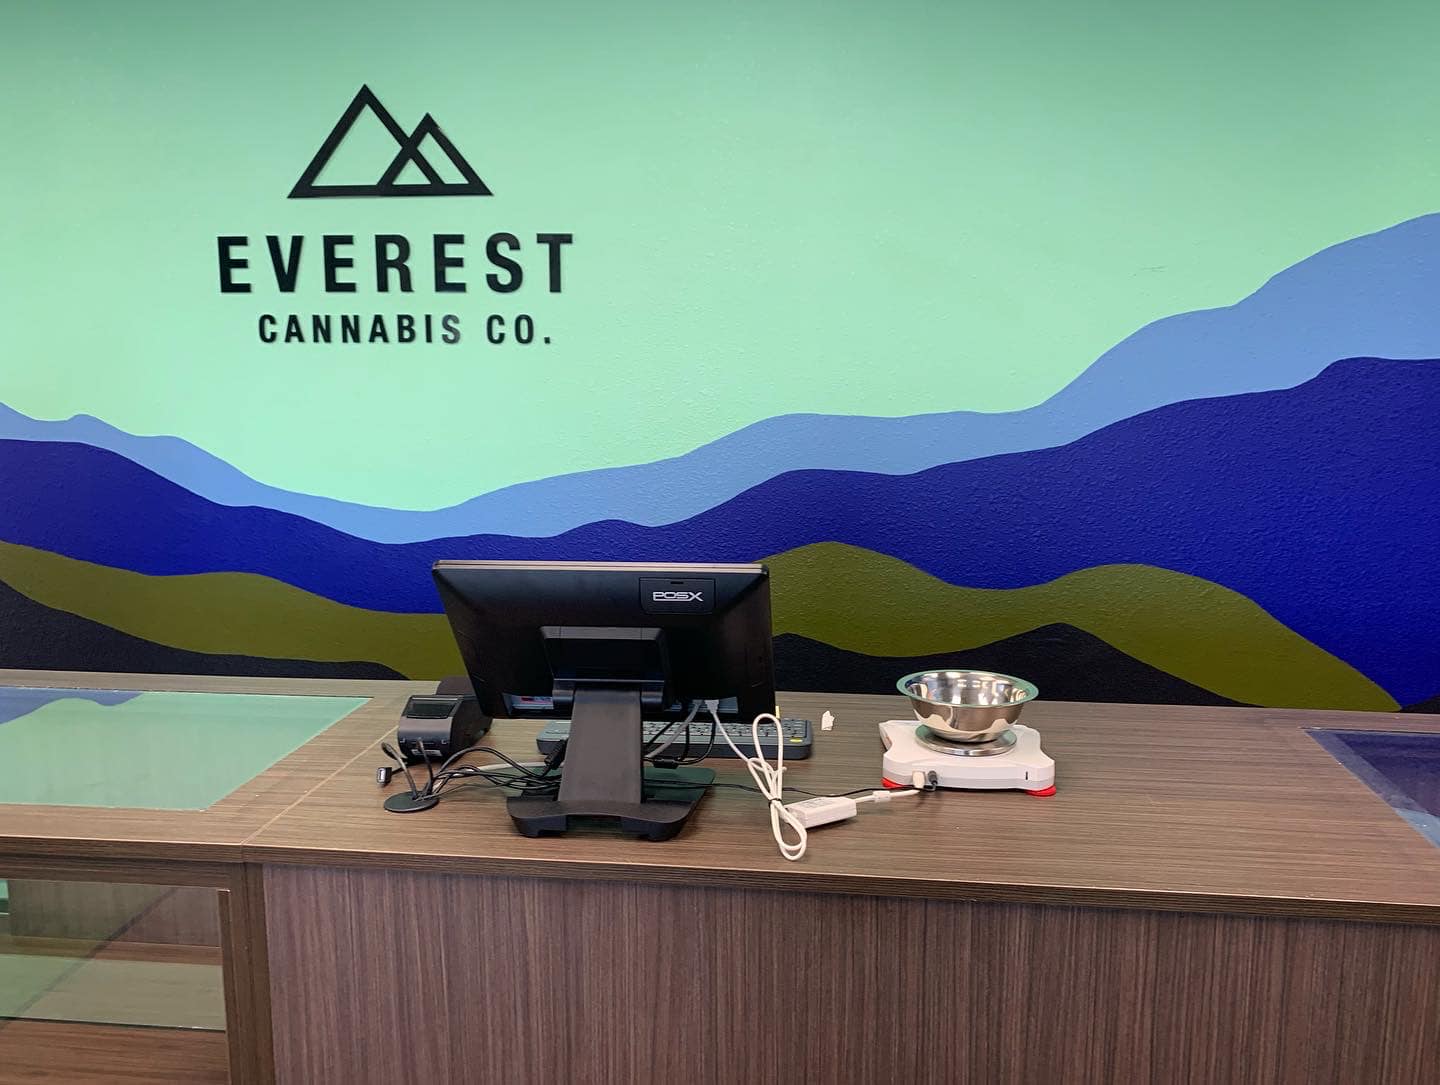 Everest cannabis co